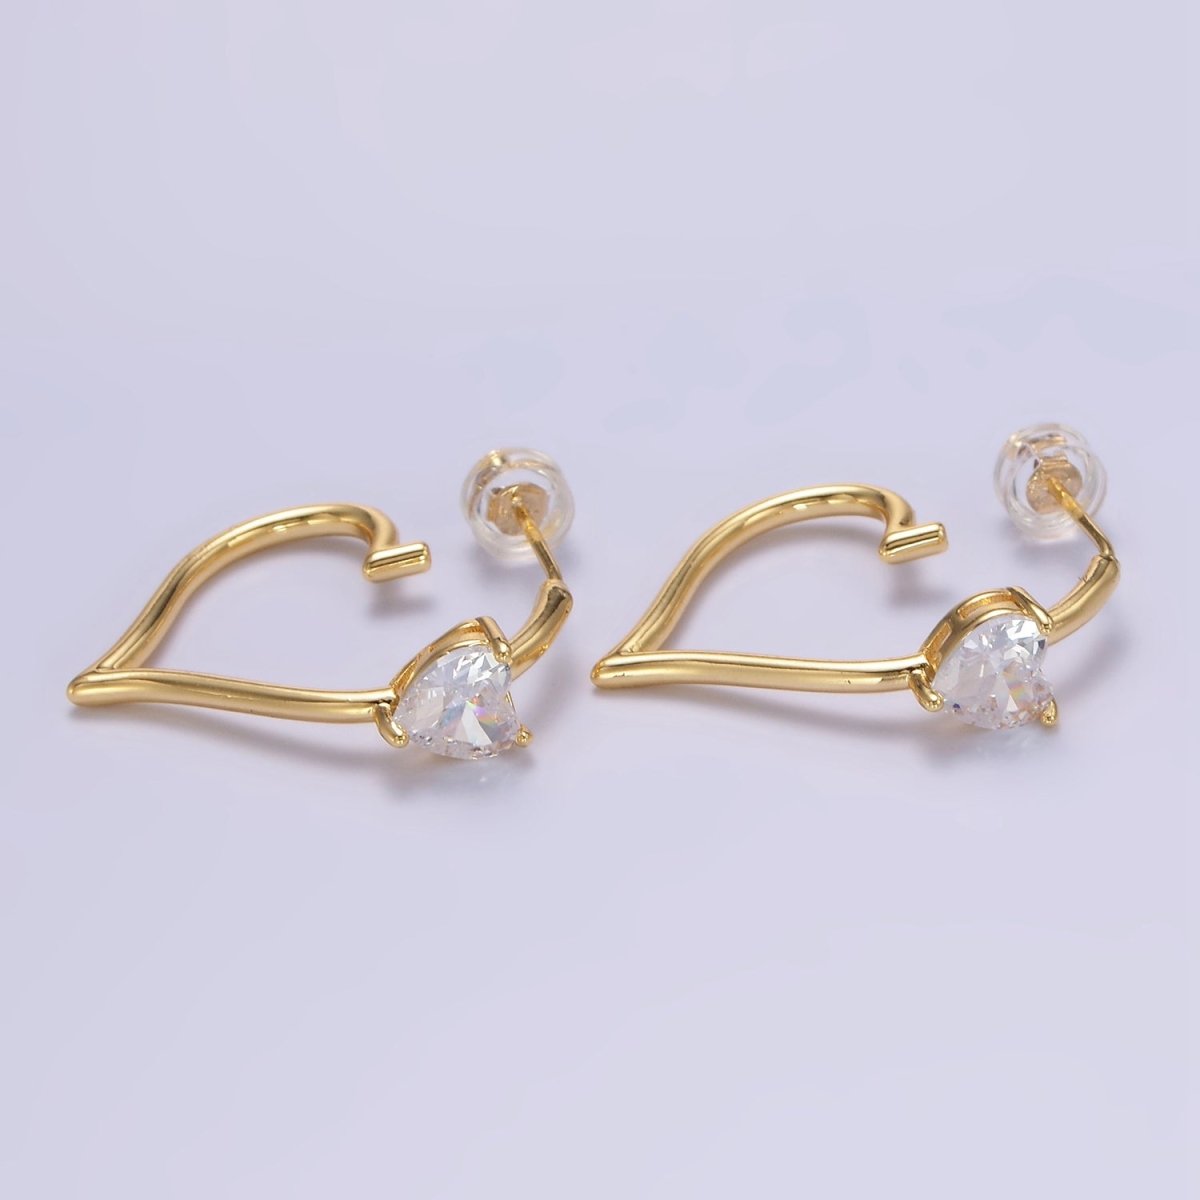 24K Gold Filled Heart CZ J - Shaped Hoop Earrings | AB1185 - DLUXCA